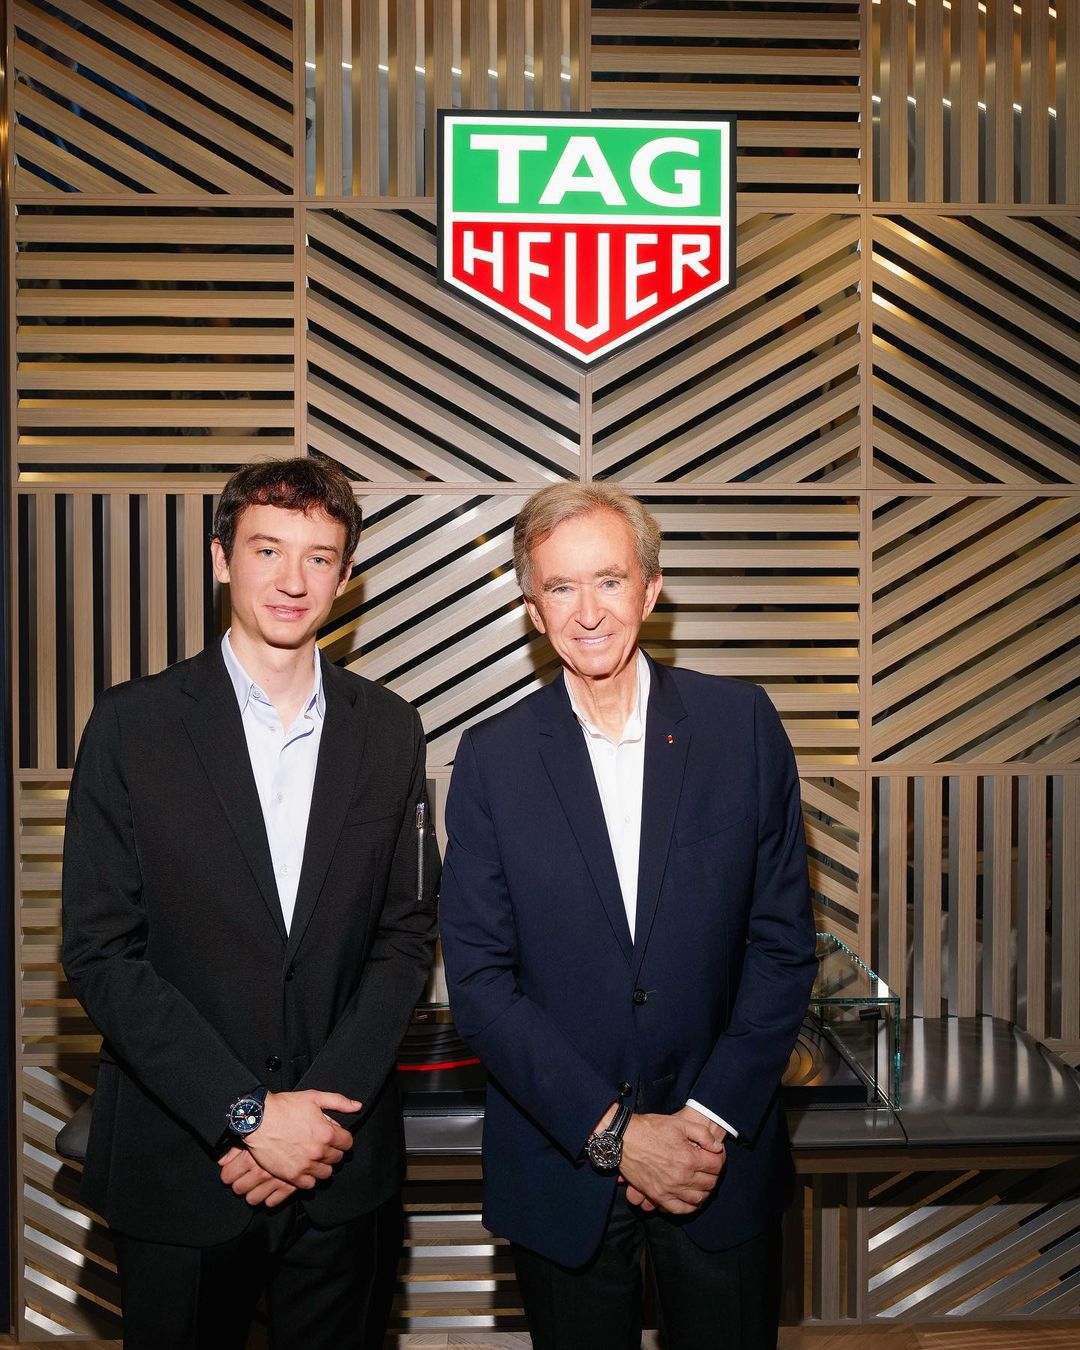 Frédéric Arnault beside his father, LVMH Chairman and CEO Bernard Arnault